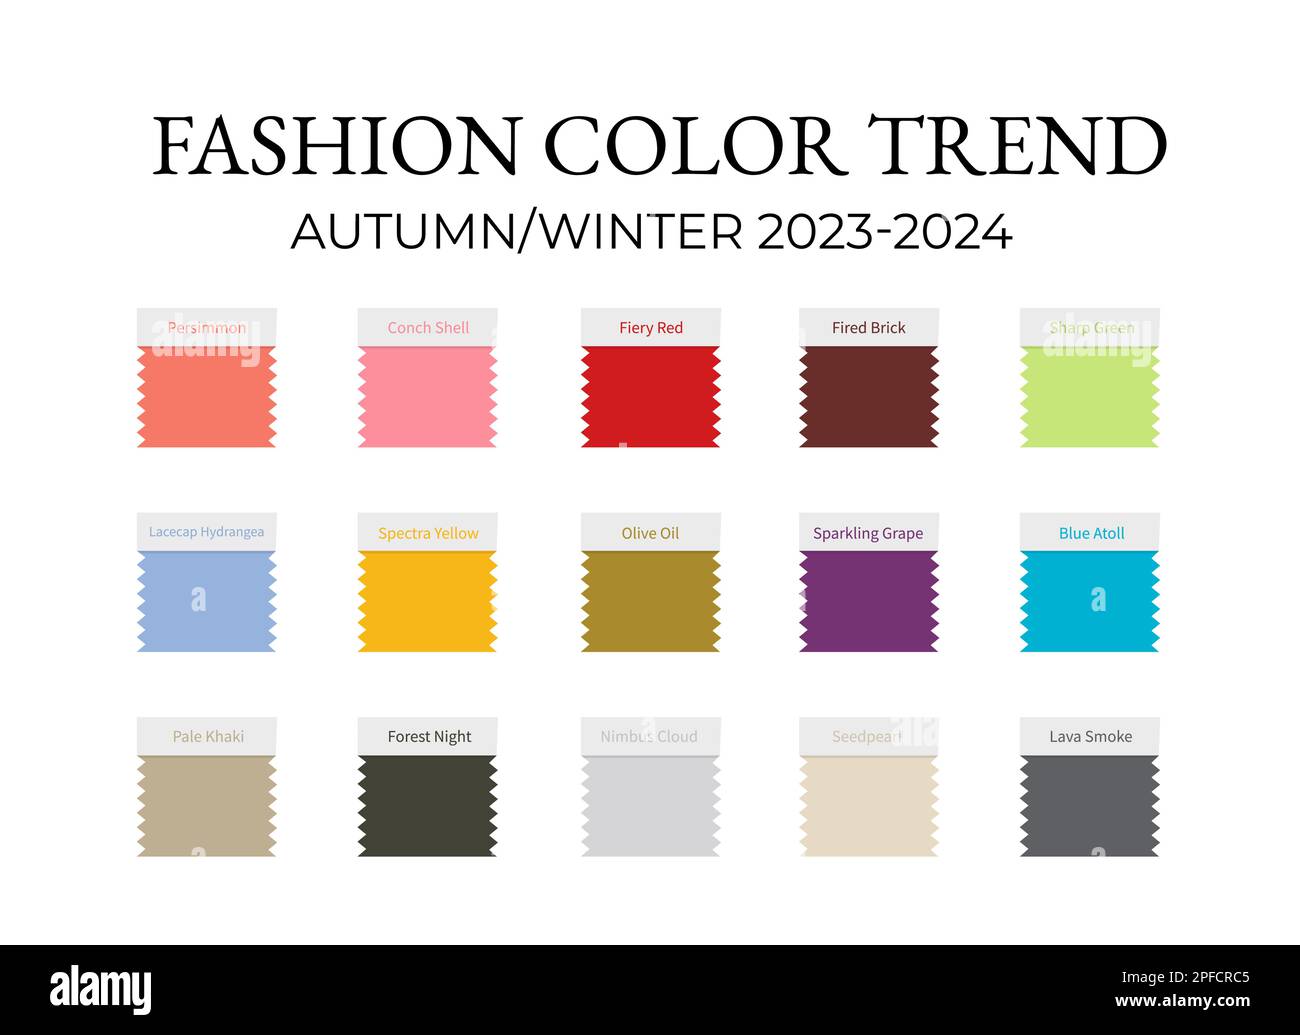 Mode couleur tendance automne - hiver 2023 - 2024. Guide de palette de couleurs tendance. Nuances de tissu avec noms de couleur. Modèle vectoriel pour votre dessin créatif Illustration de Vecteur